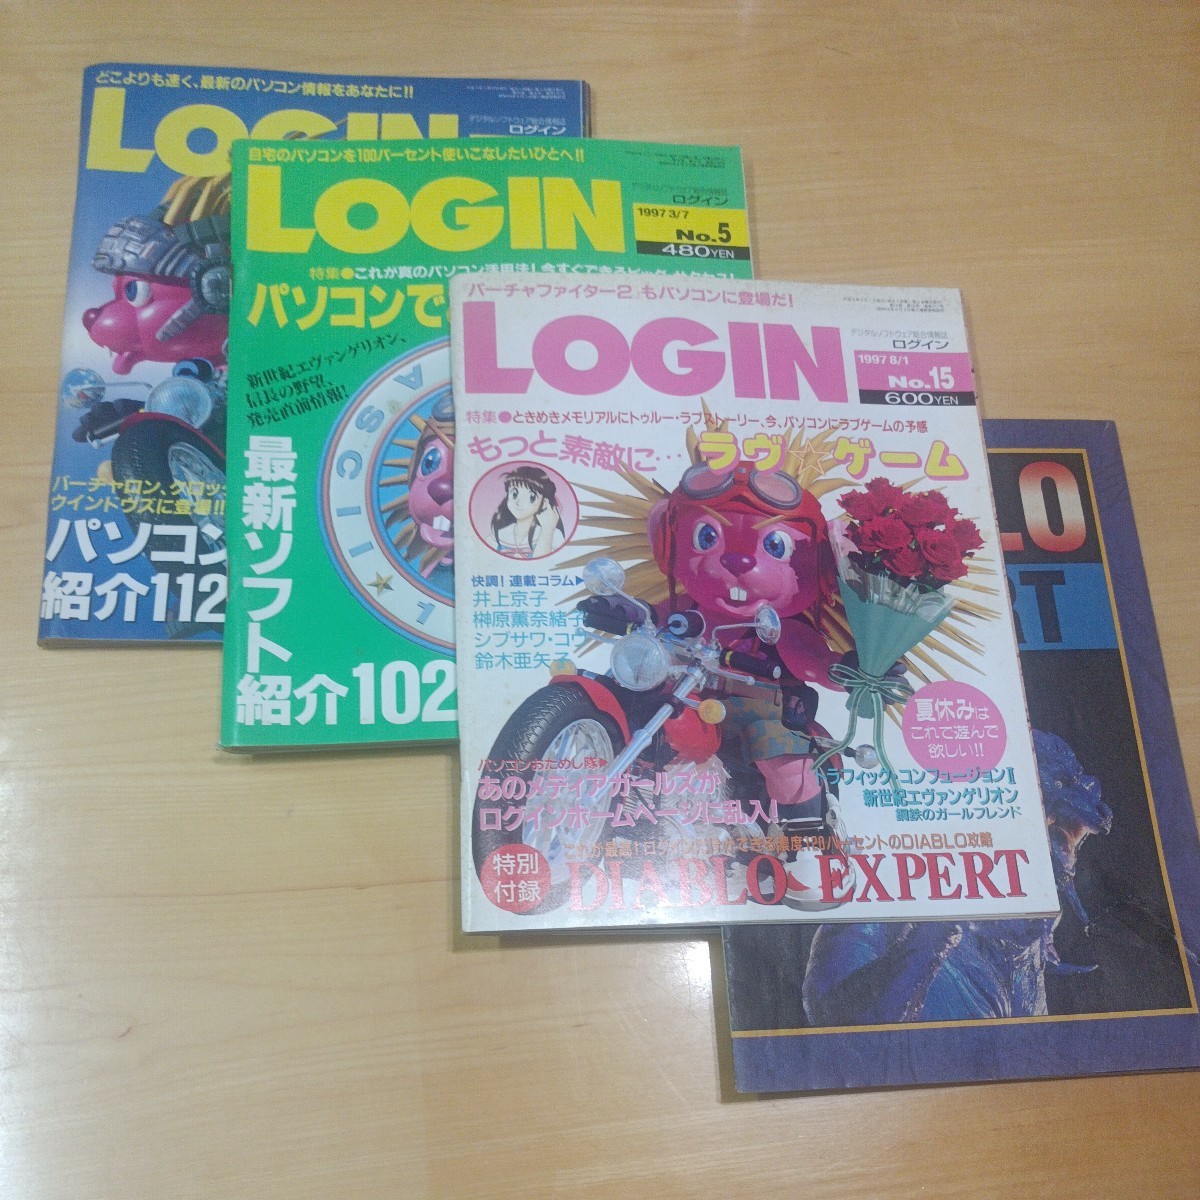 月刊ログイン LOG iN 1997 No.4 No.5 No.15 3冊セット No.15 別冊付録1冊_画像1